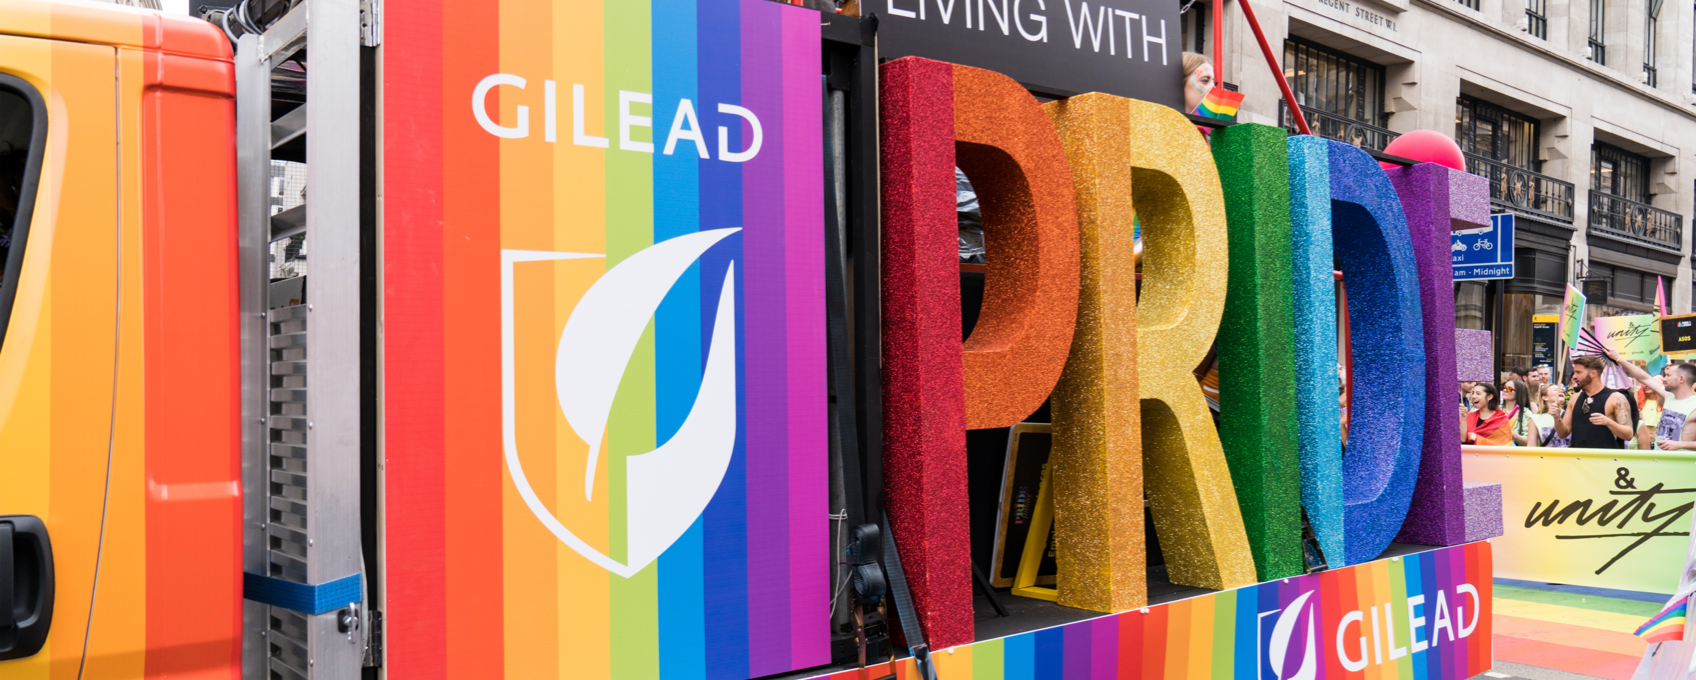 Gilead London Pride van